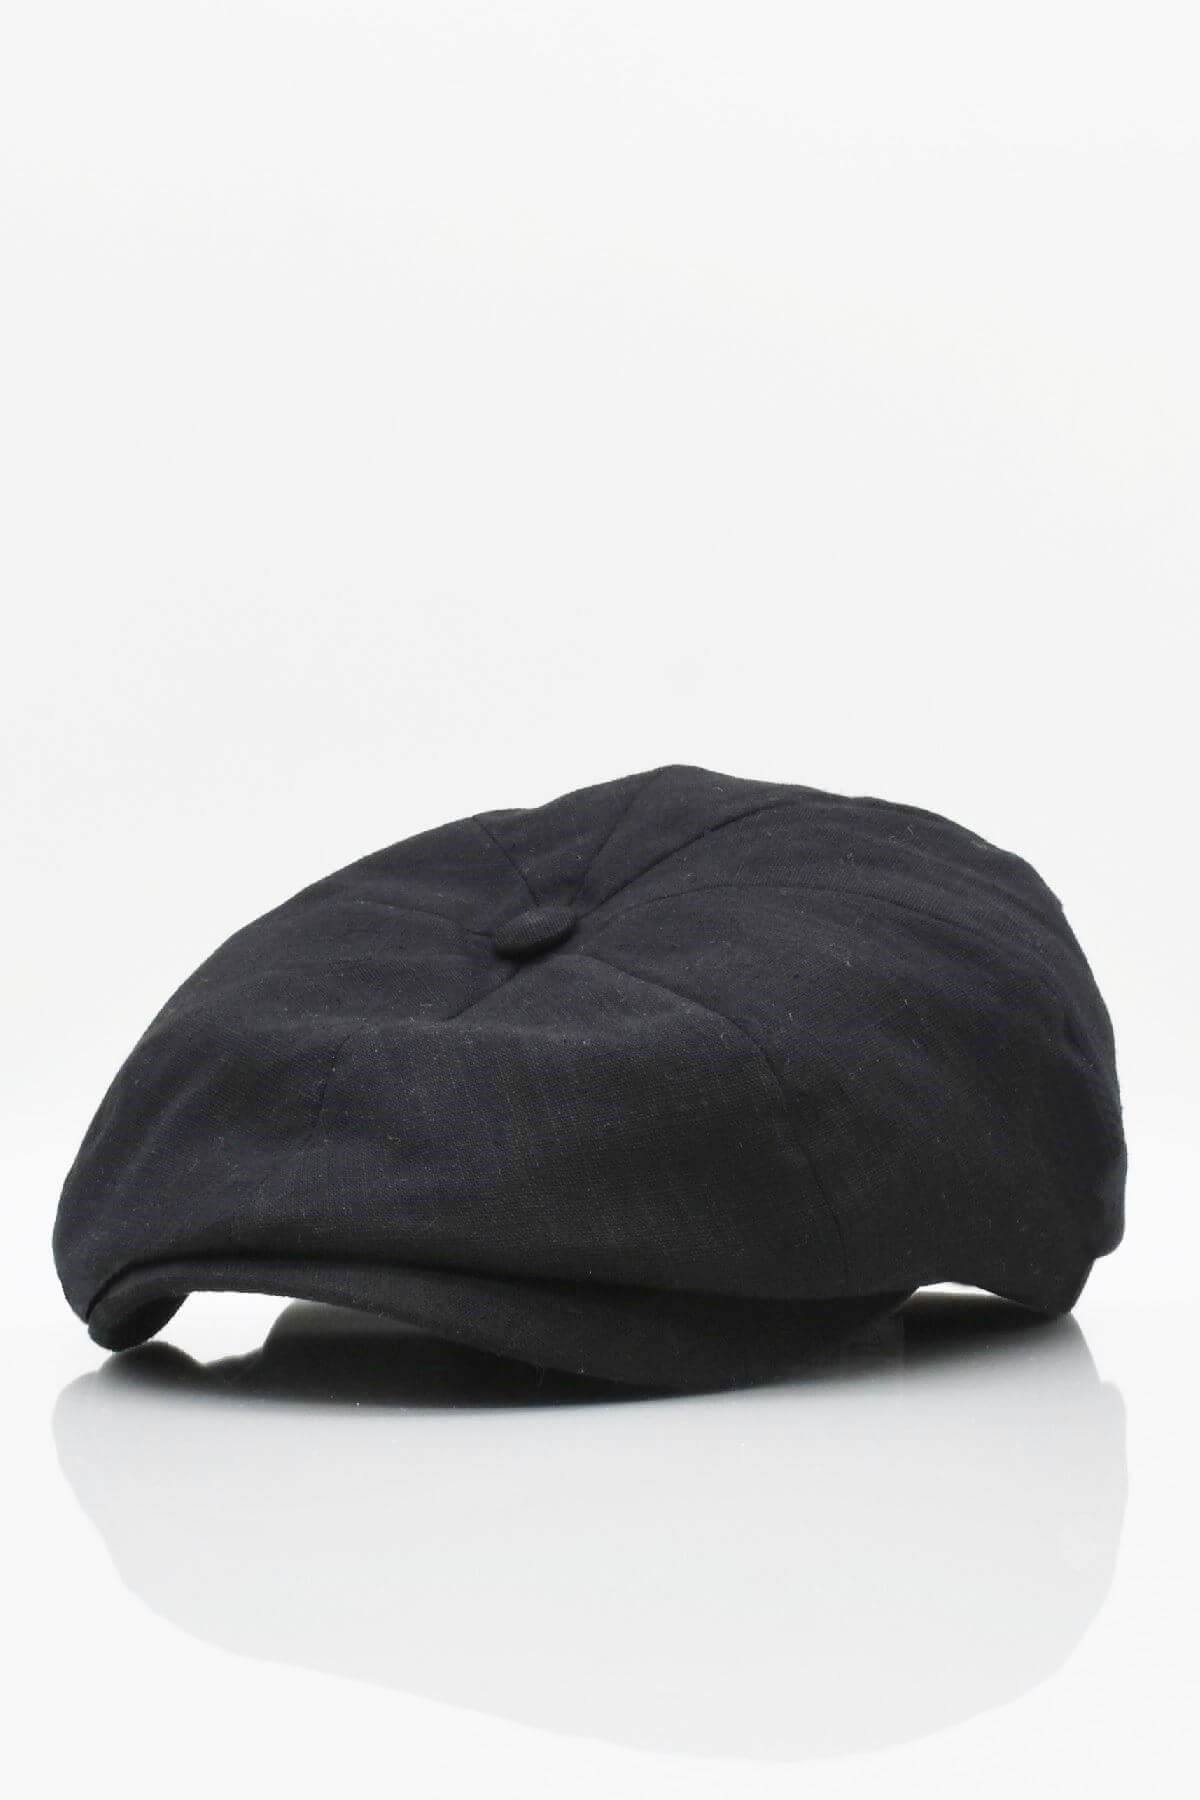 Külah İngiliz Stili London Yazlık Kasket Şapka Siyah KLH7009